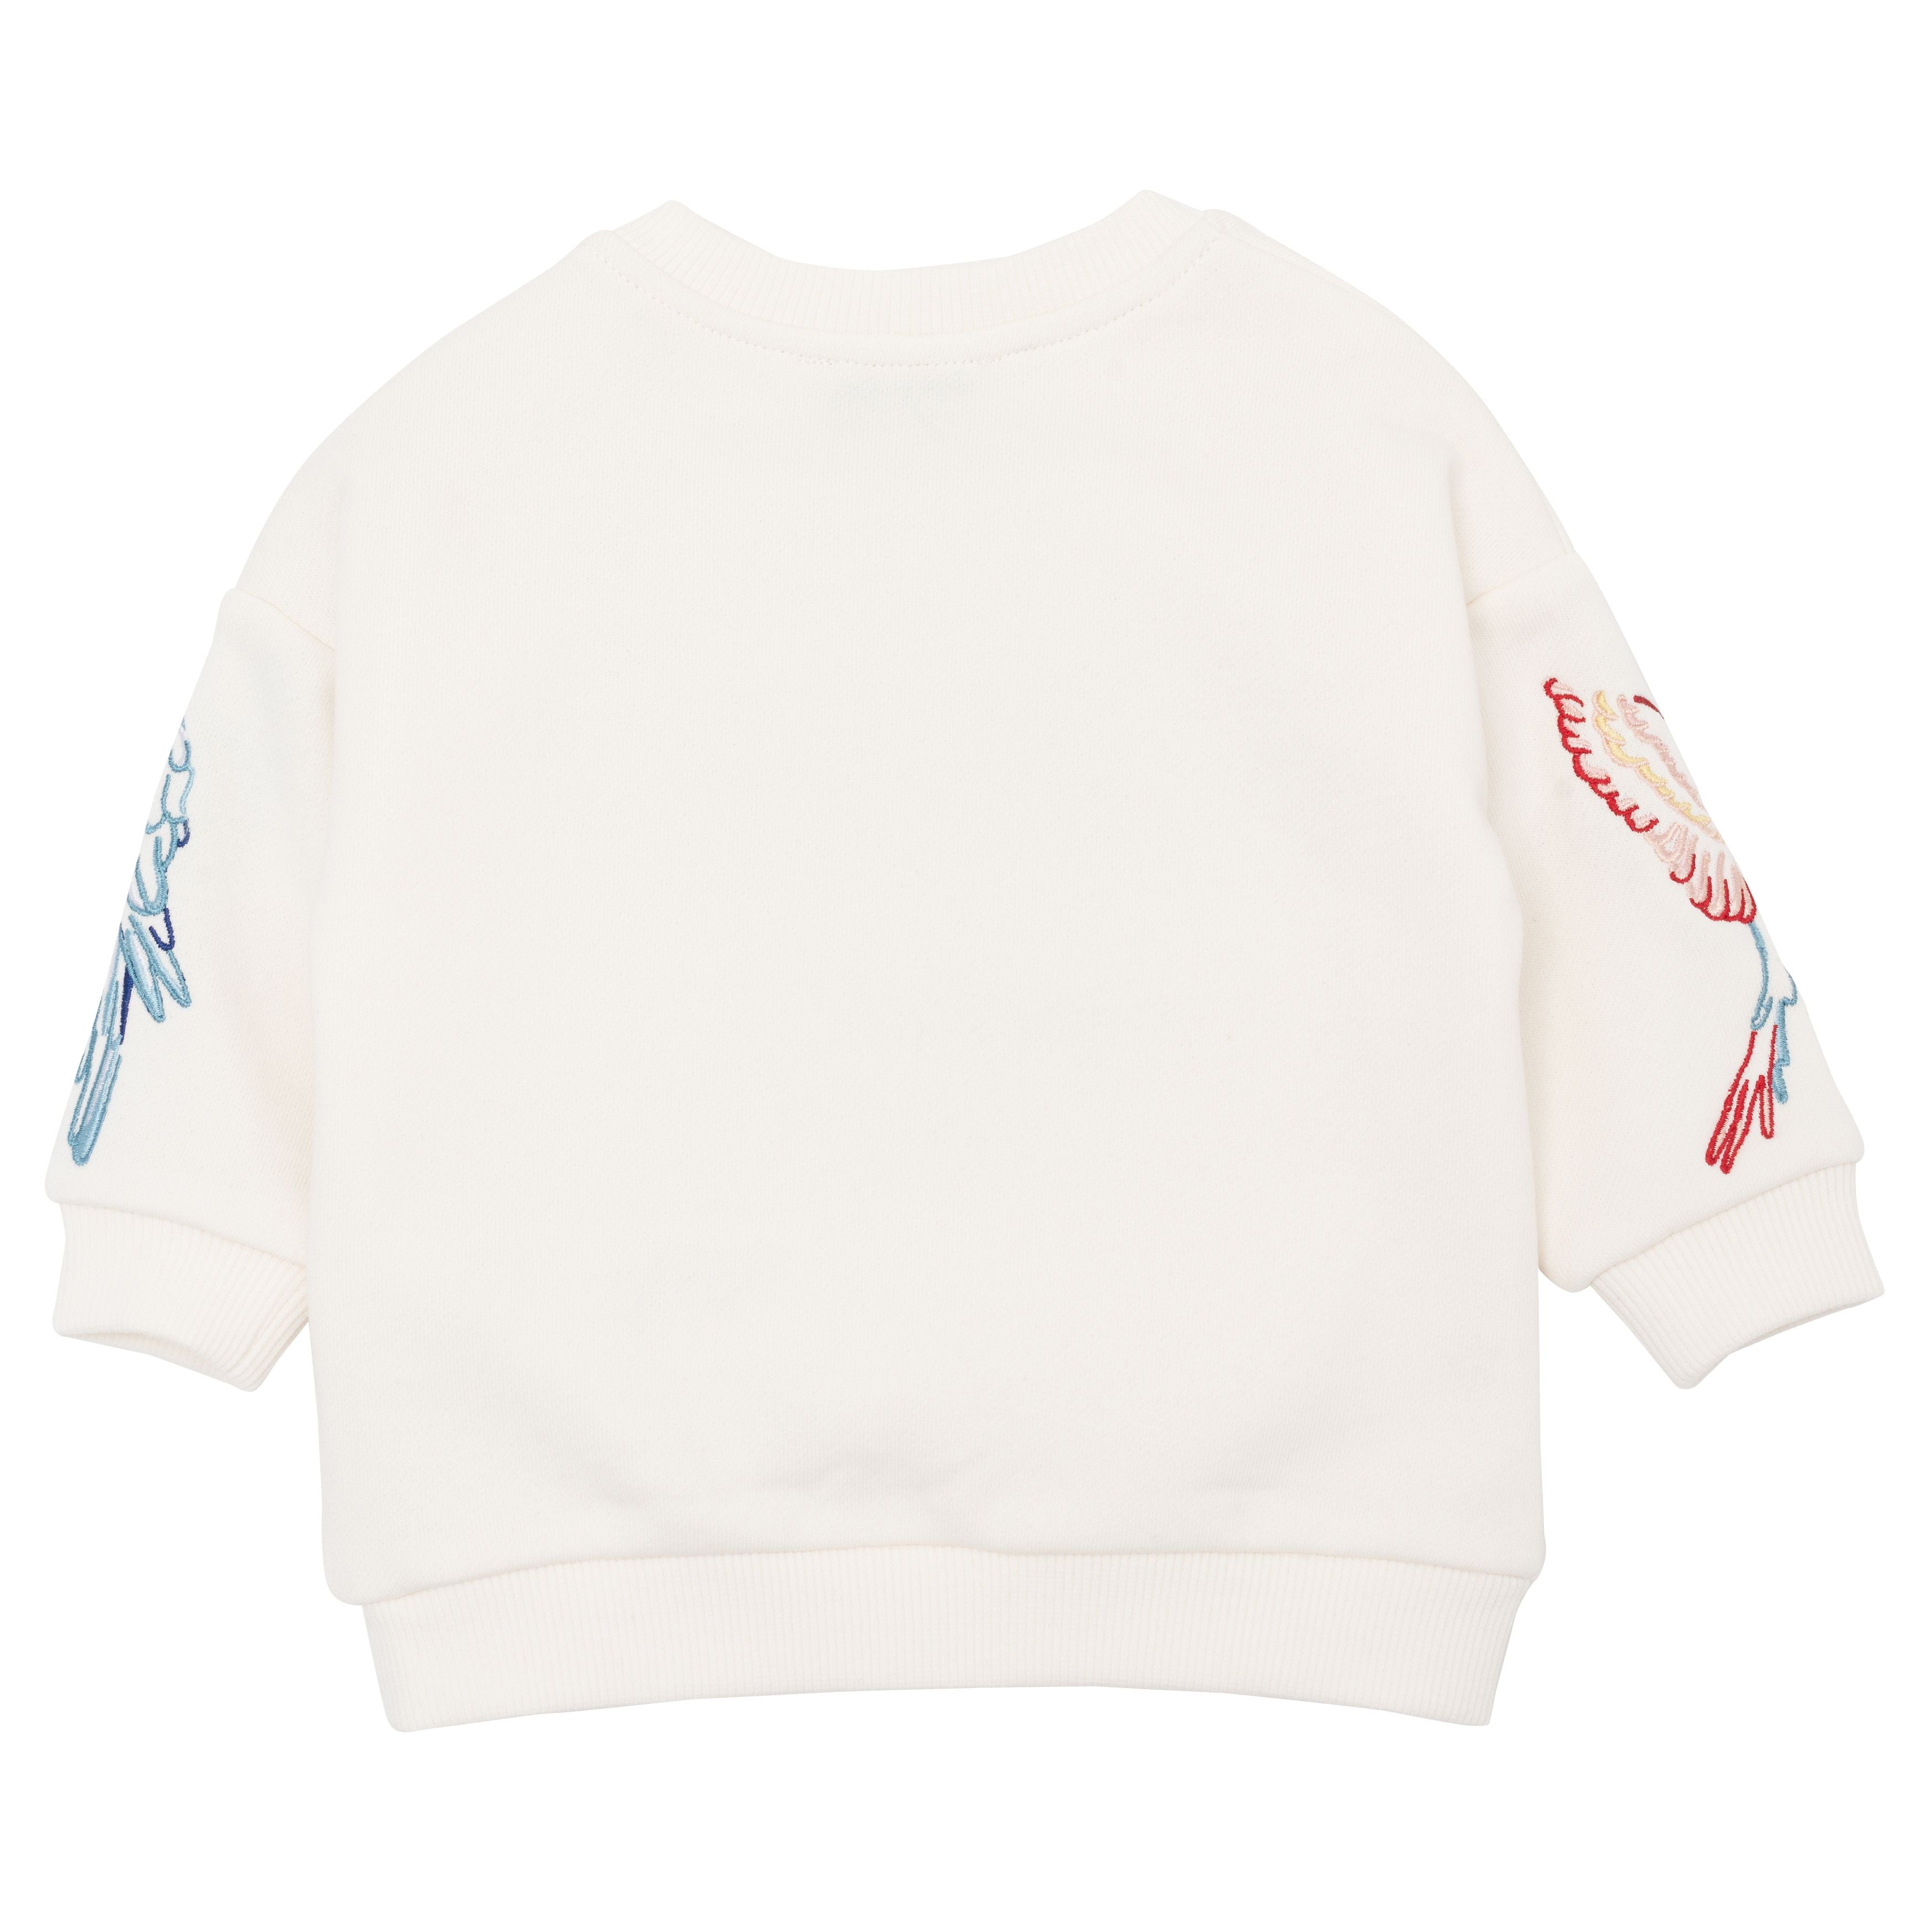 Baby Boys & Girls White Cotton Sweatshirt